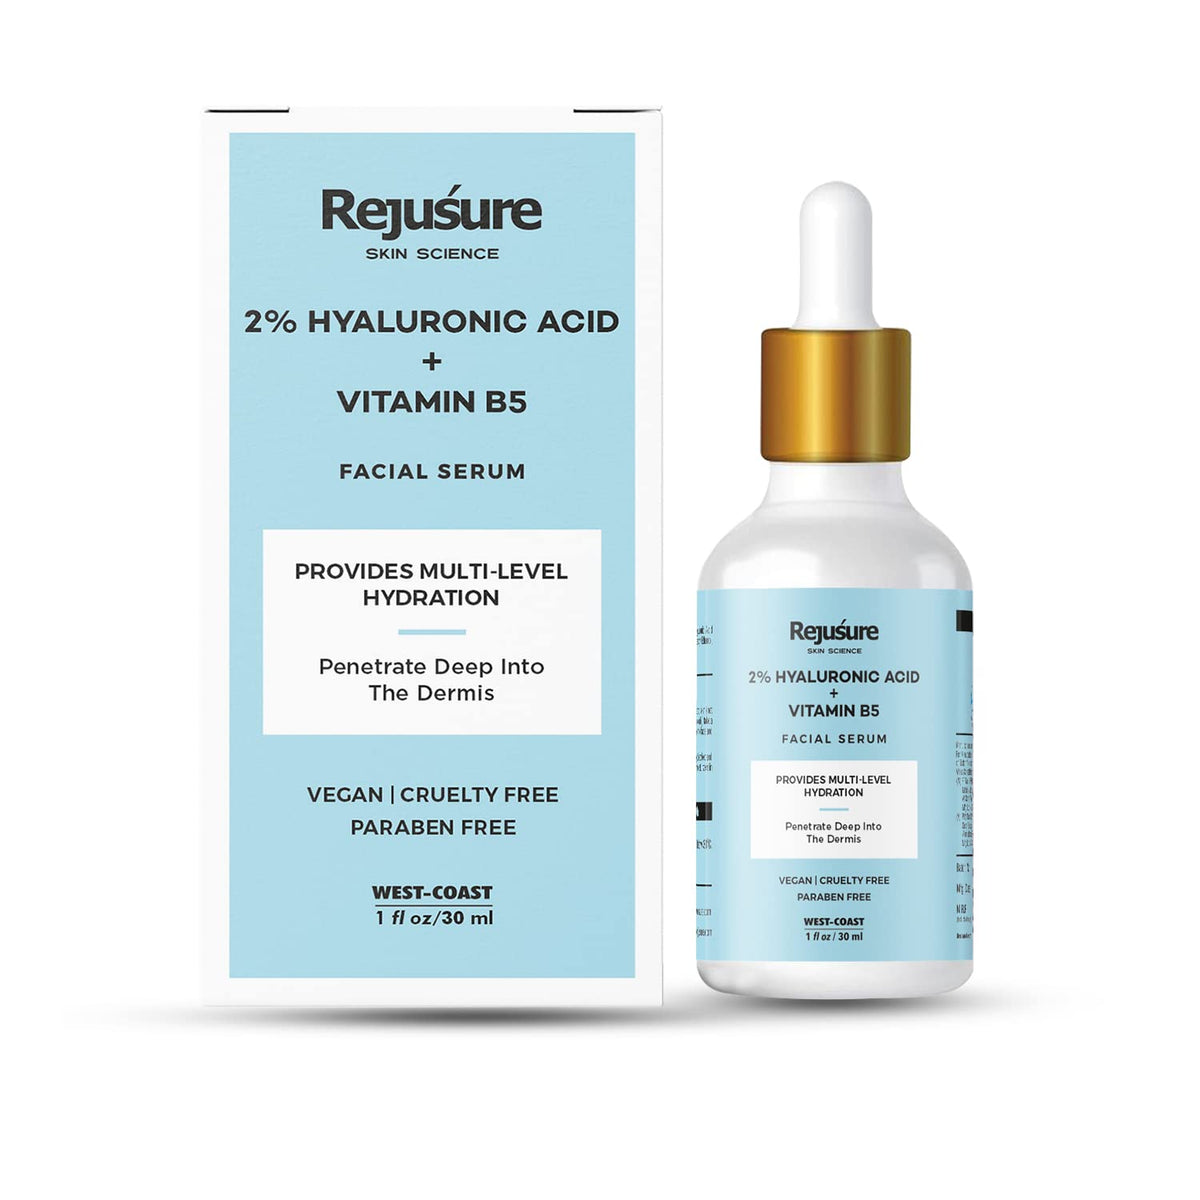 Rejusure 2% Hyaluronic Acid + Vitamin B5 Facial Serum - Intense Hydration | Glowing Skin - 30ml - Face Serum for Men & Women